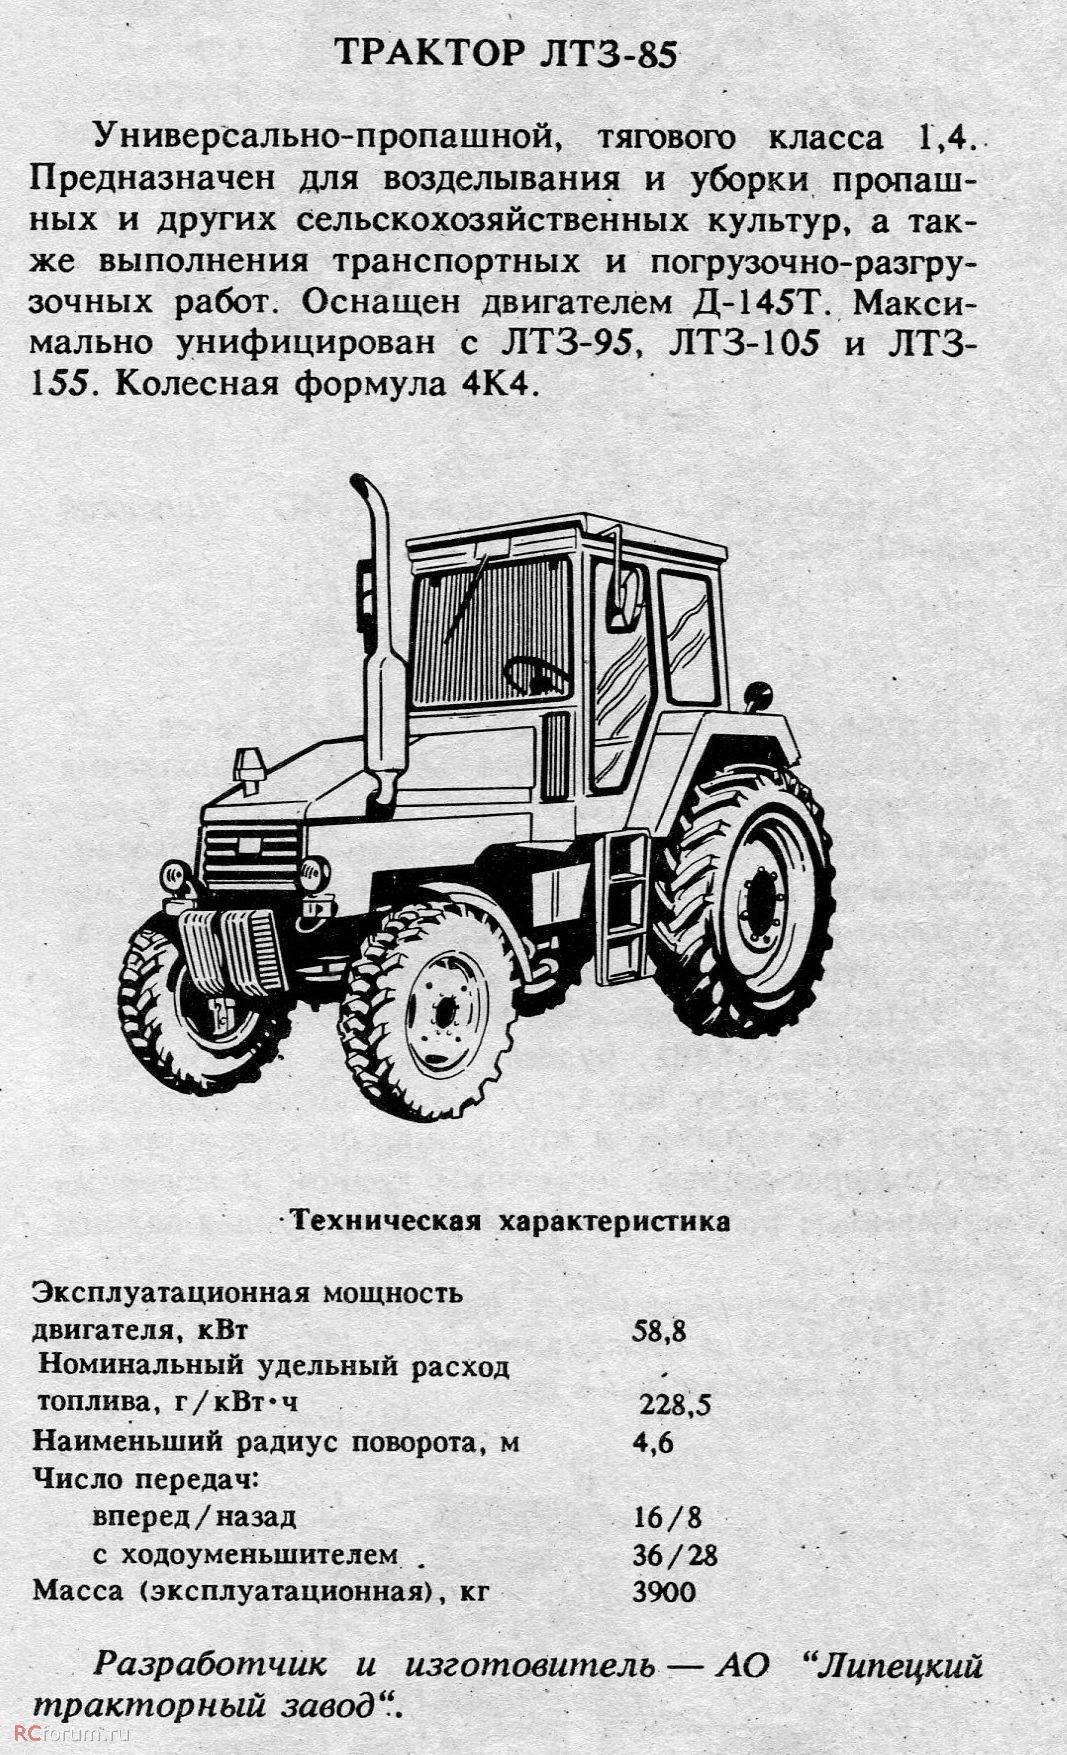 Трактор т-40 — особенности и возможности